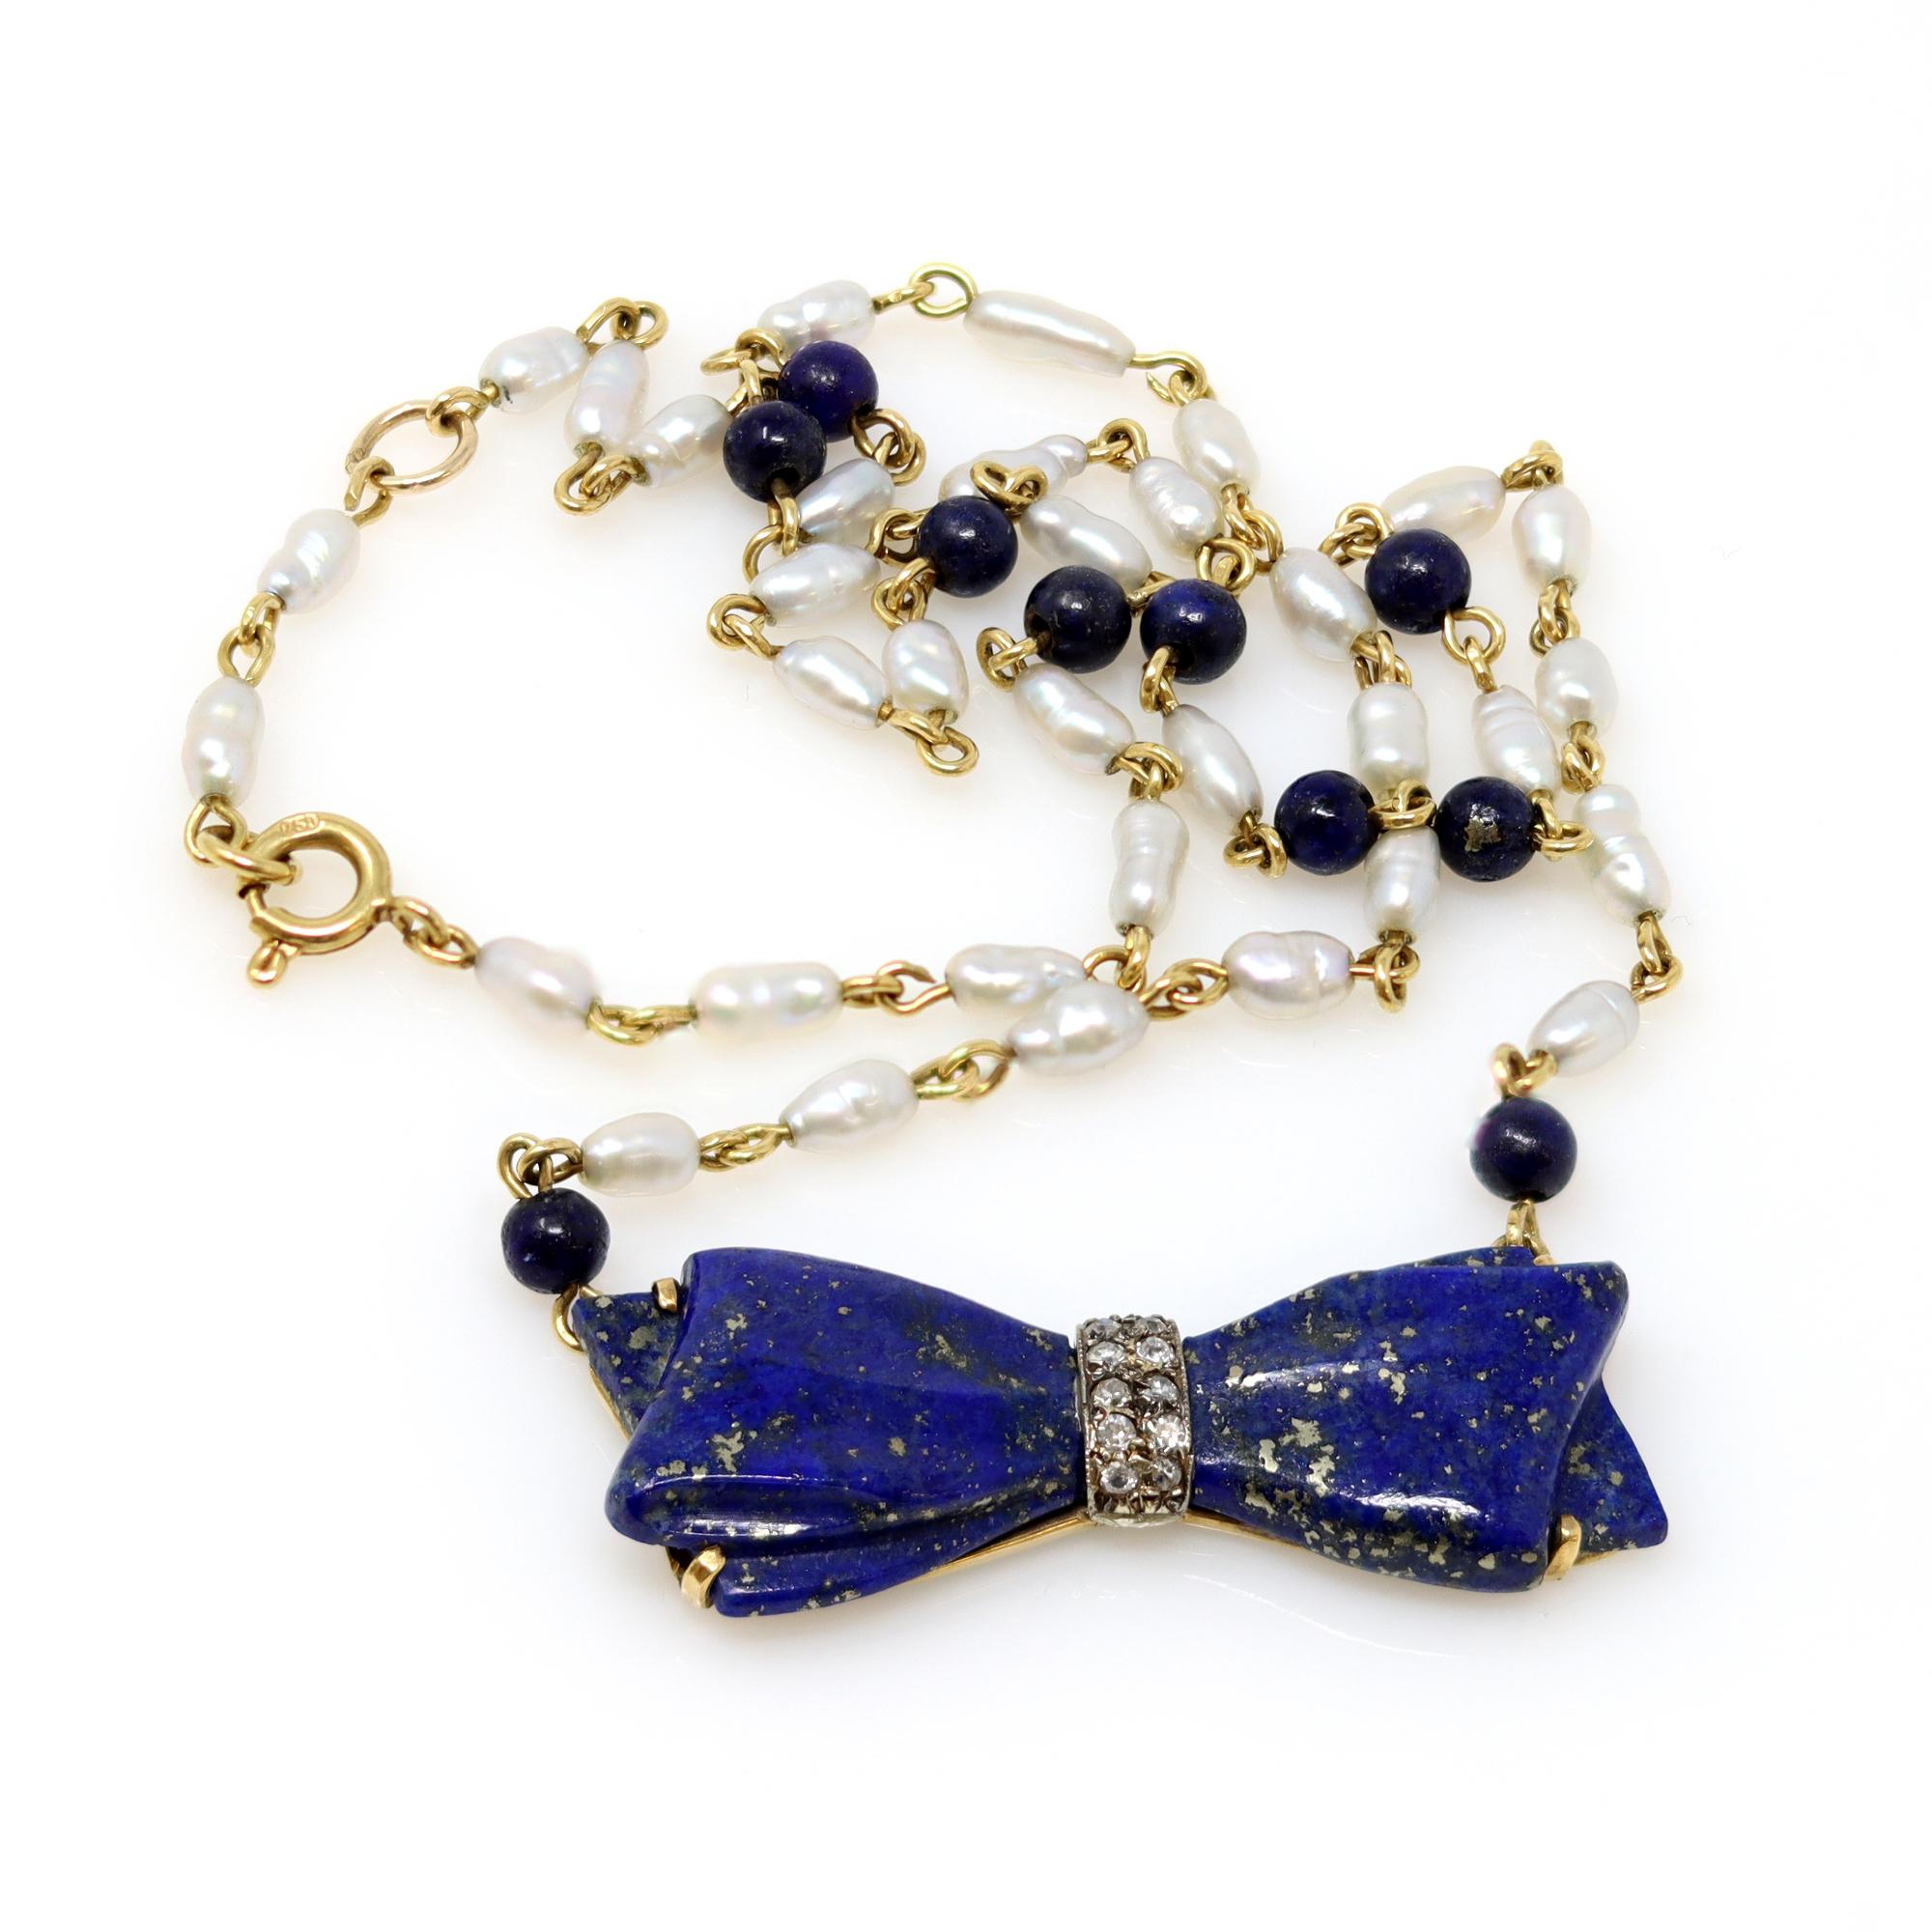 Un collier datant de 1960 est une combinaison d'un noeud antique en lapis-lazuli, d'une partie supérieure en argent sur or avec des accents de diamants taille ancienne en son centre et d'une chaîne de station datant de 1960 avec des perles en